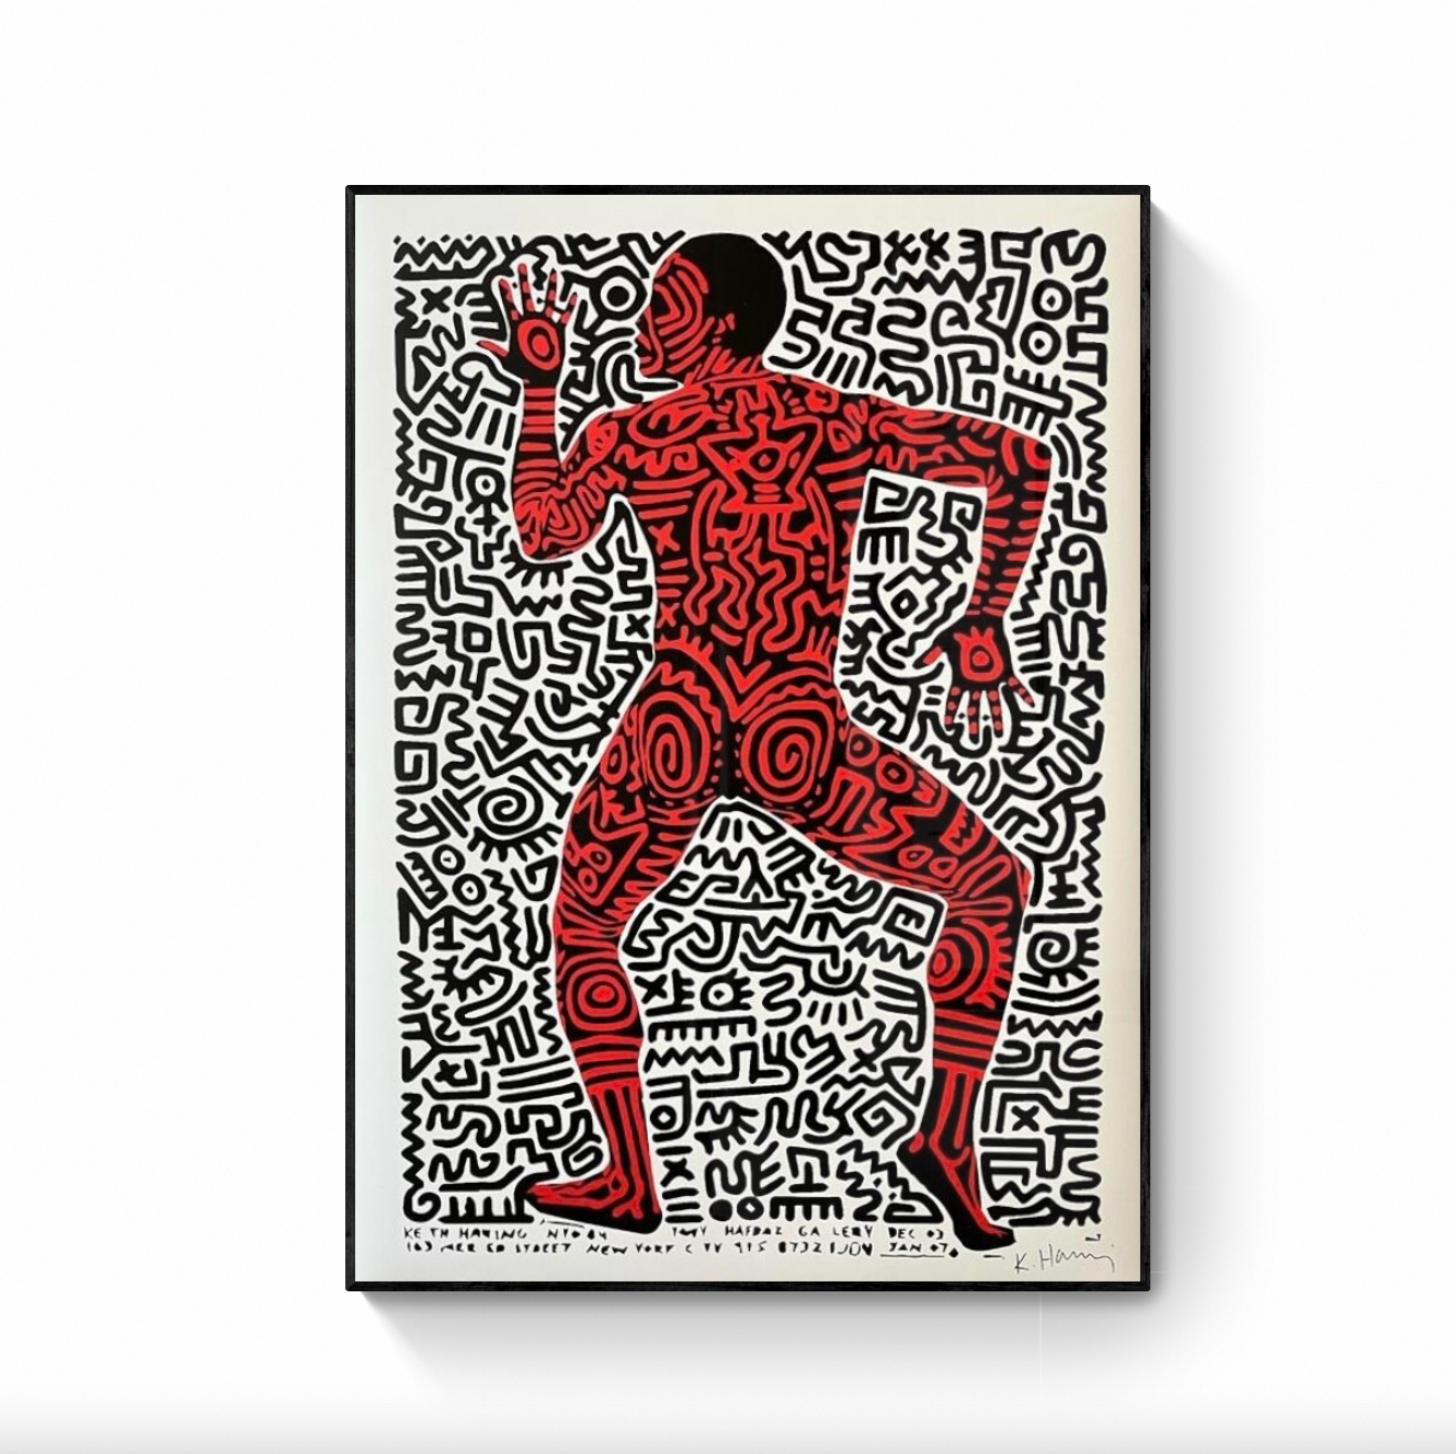 【新作超特価】Keith Haring、The Story of Jason 129、希少画集画、新品額装付、choco その他